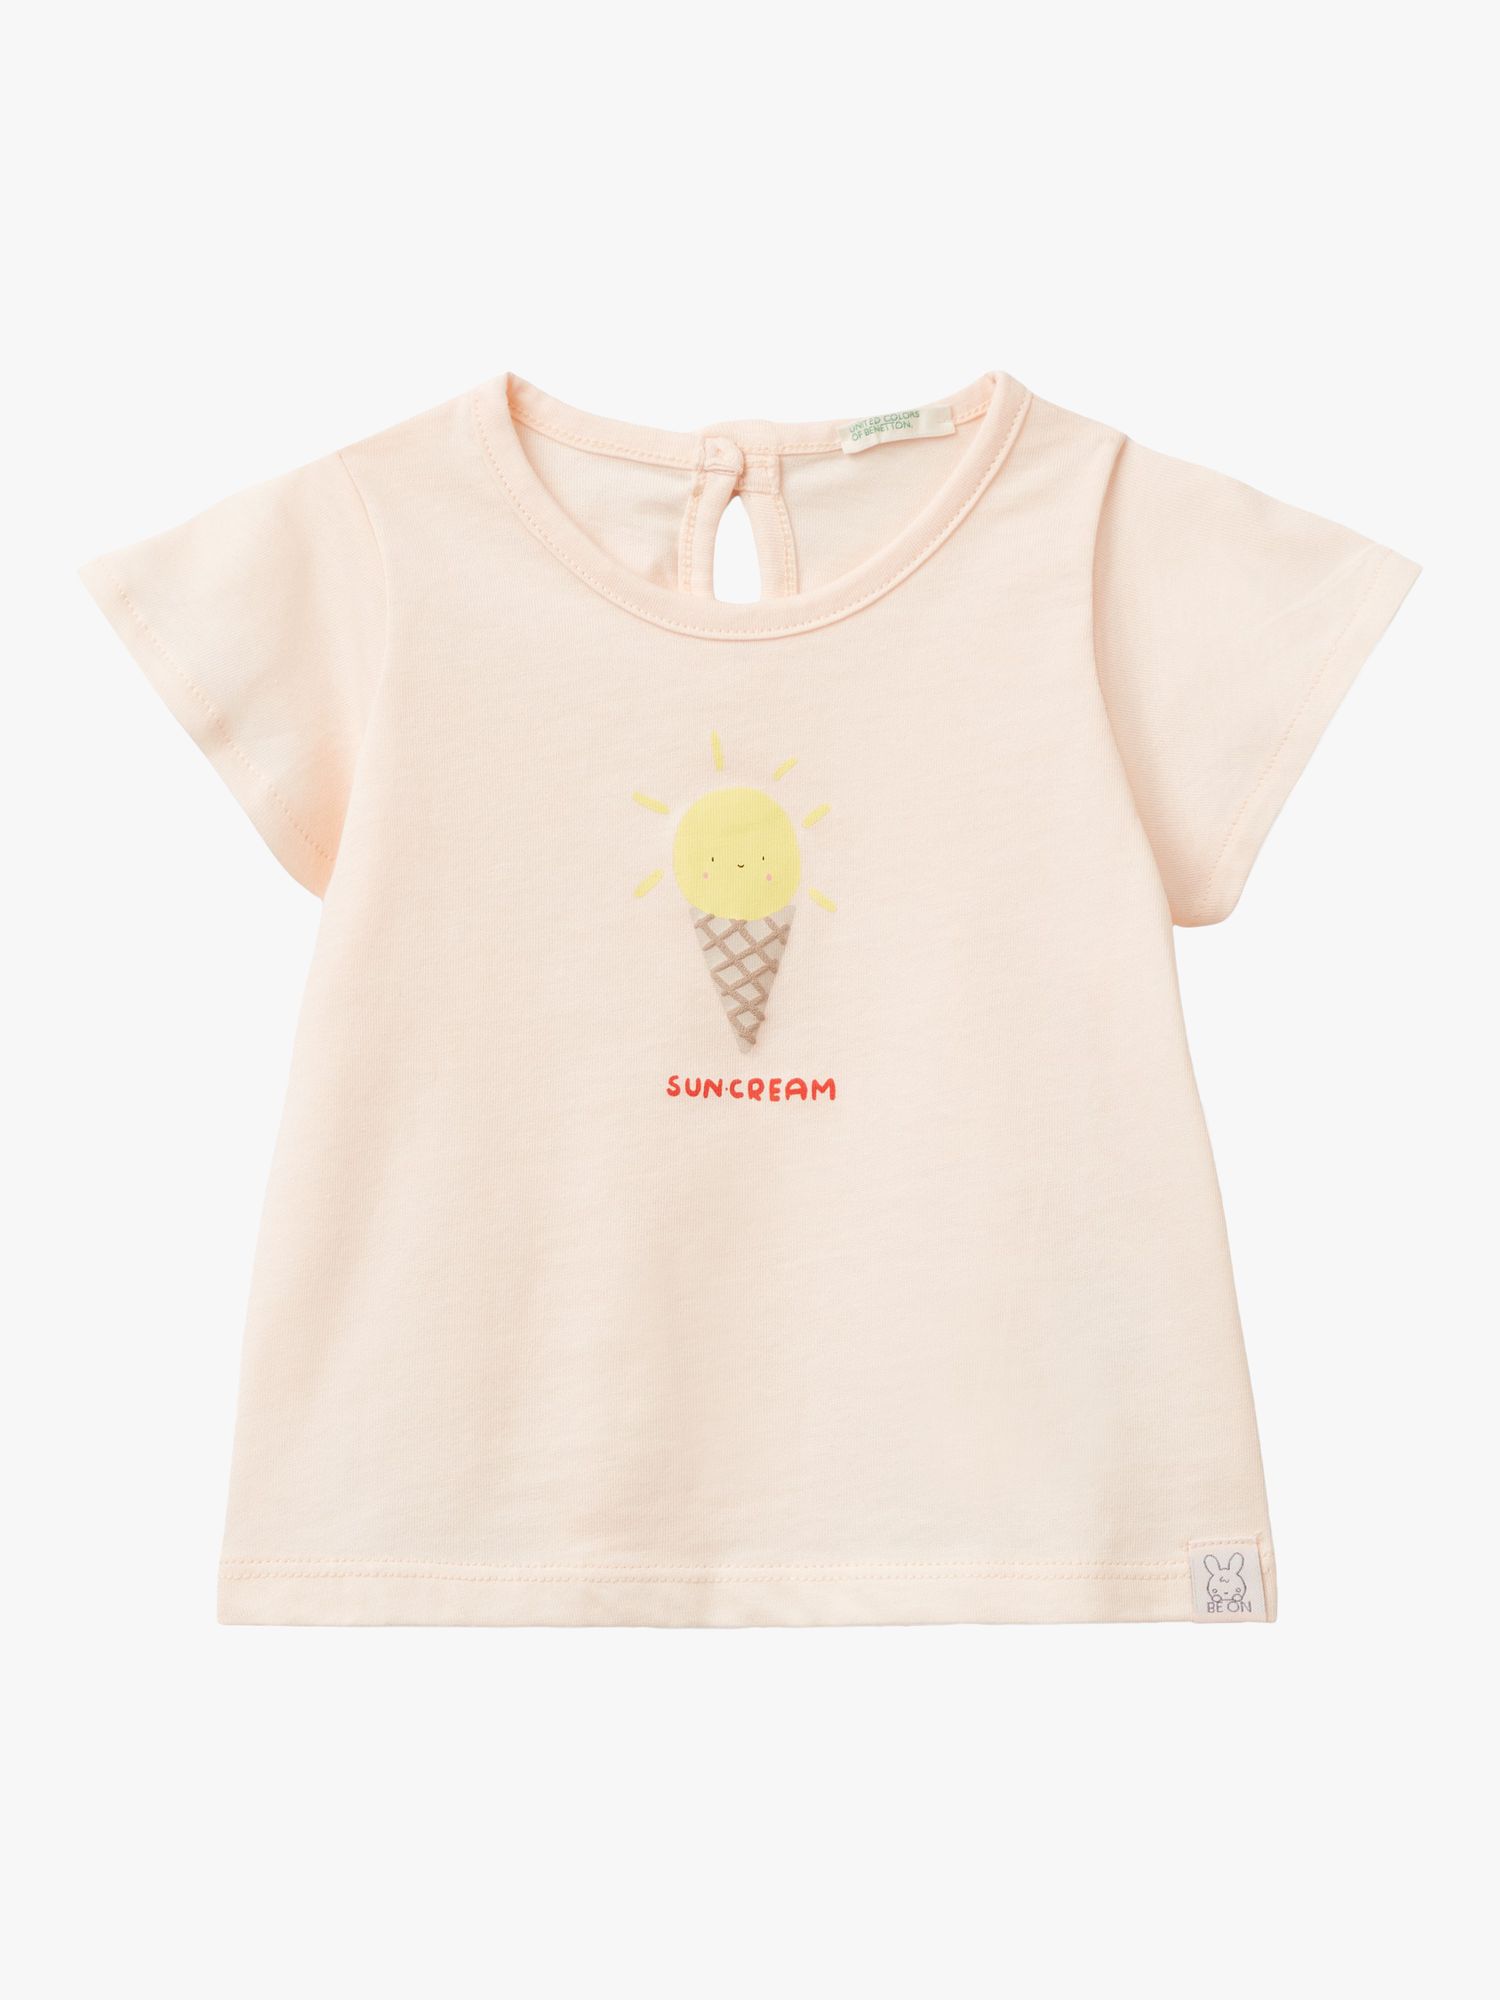 Benetton Baby Suncream T-Shirt, Light Powder, 0-3 months